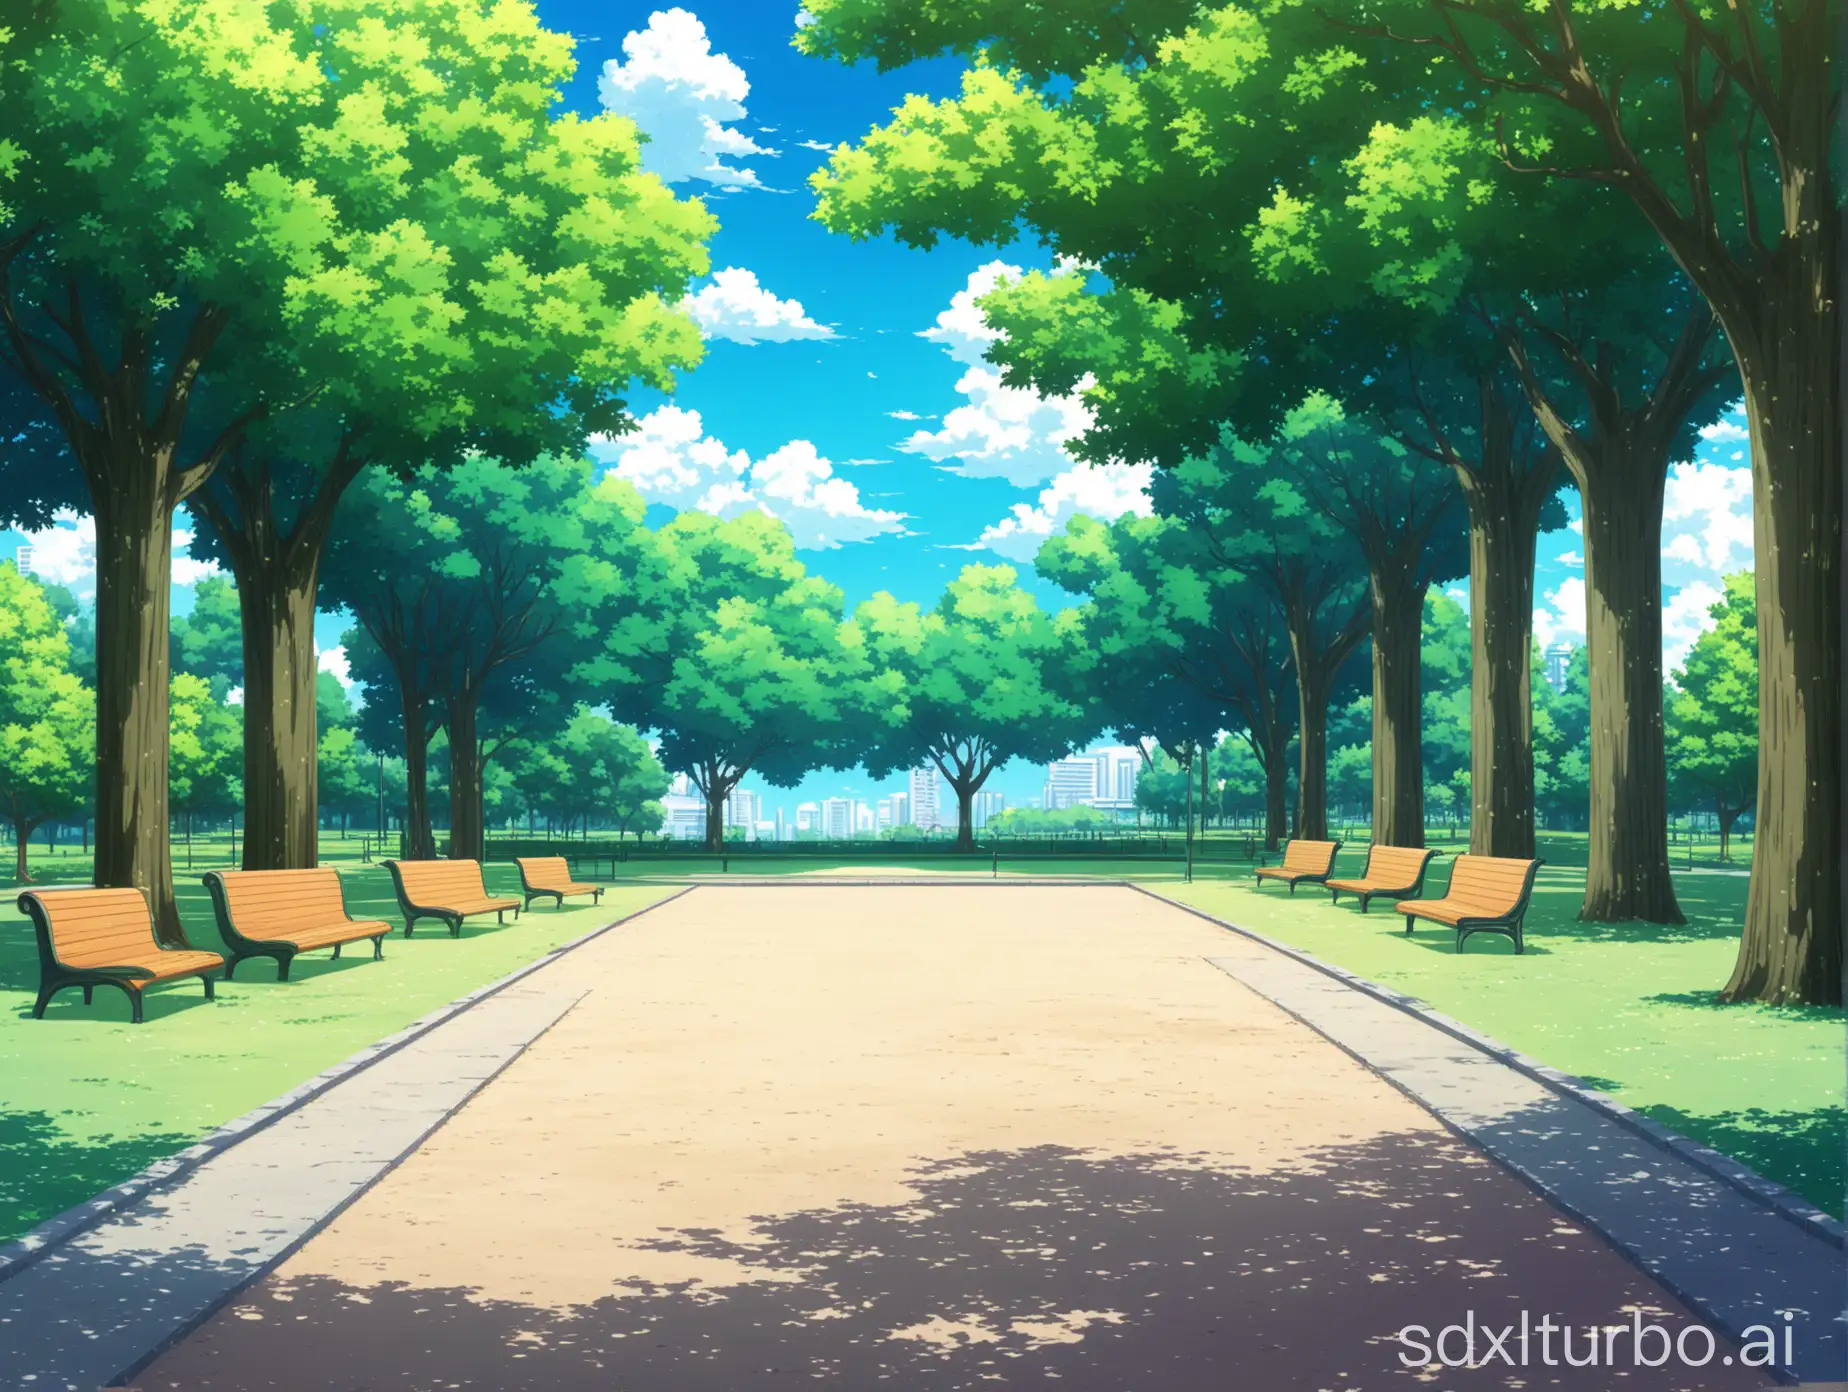 Tranquil-Anime-Park-Scene-Serene-Daytime-Park-with-Lush-Trees